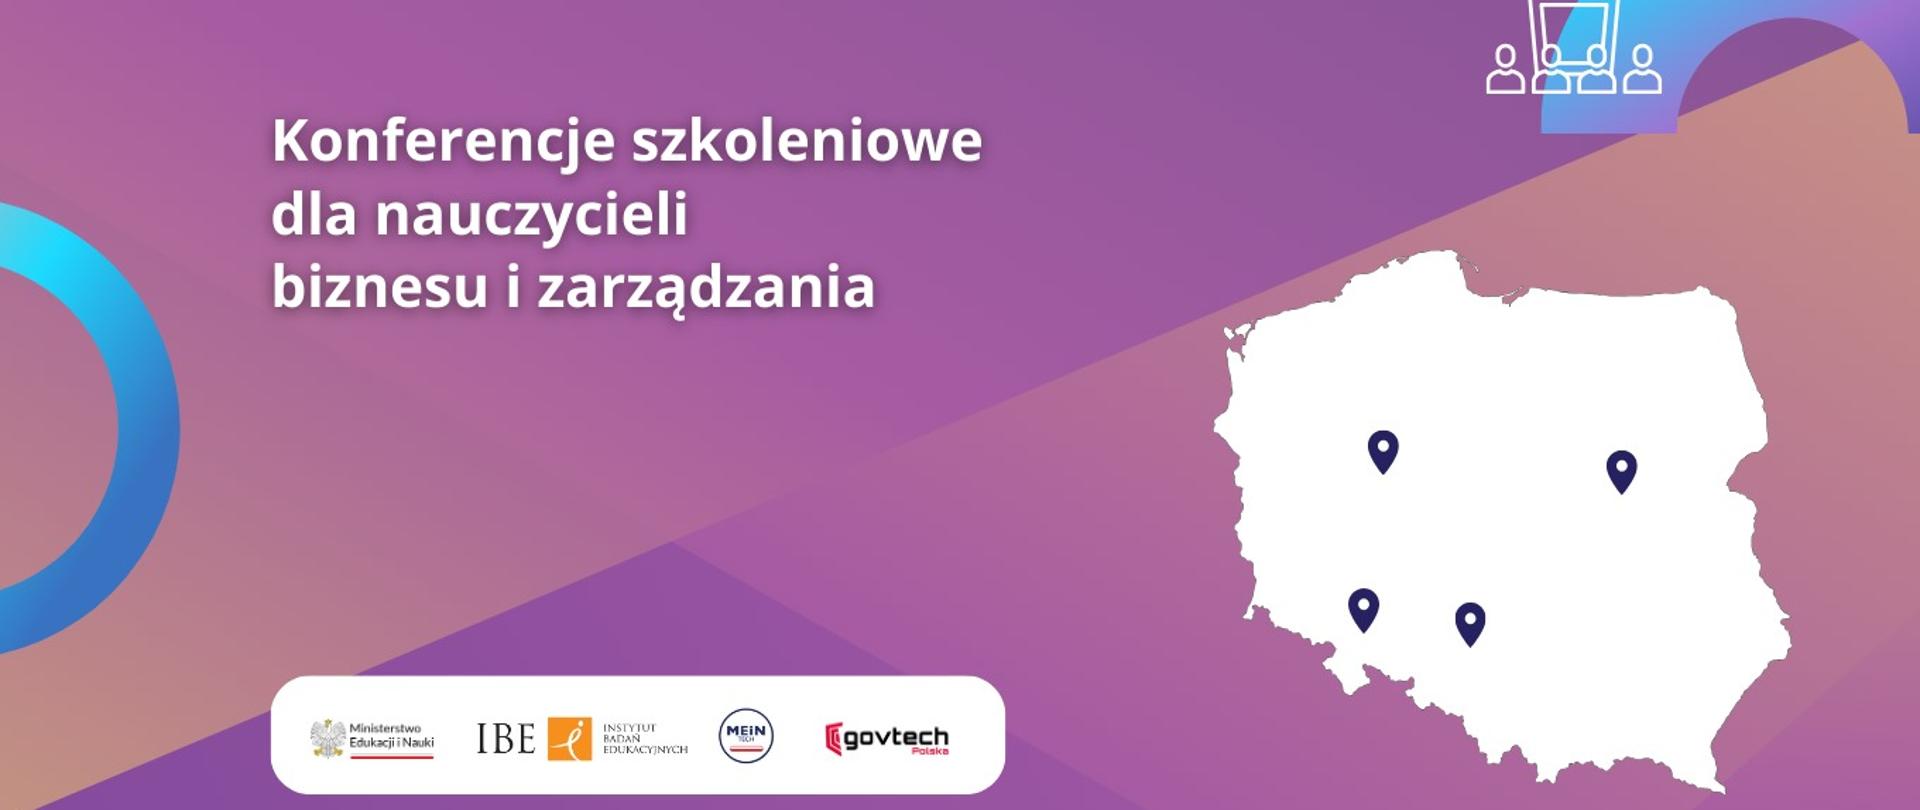 Grafika - na fioletowo-różowym tle kontur Polski i napis Konferencje szkoleniowe dla nauczycieli biznesu i zarządzania.